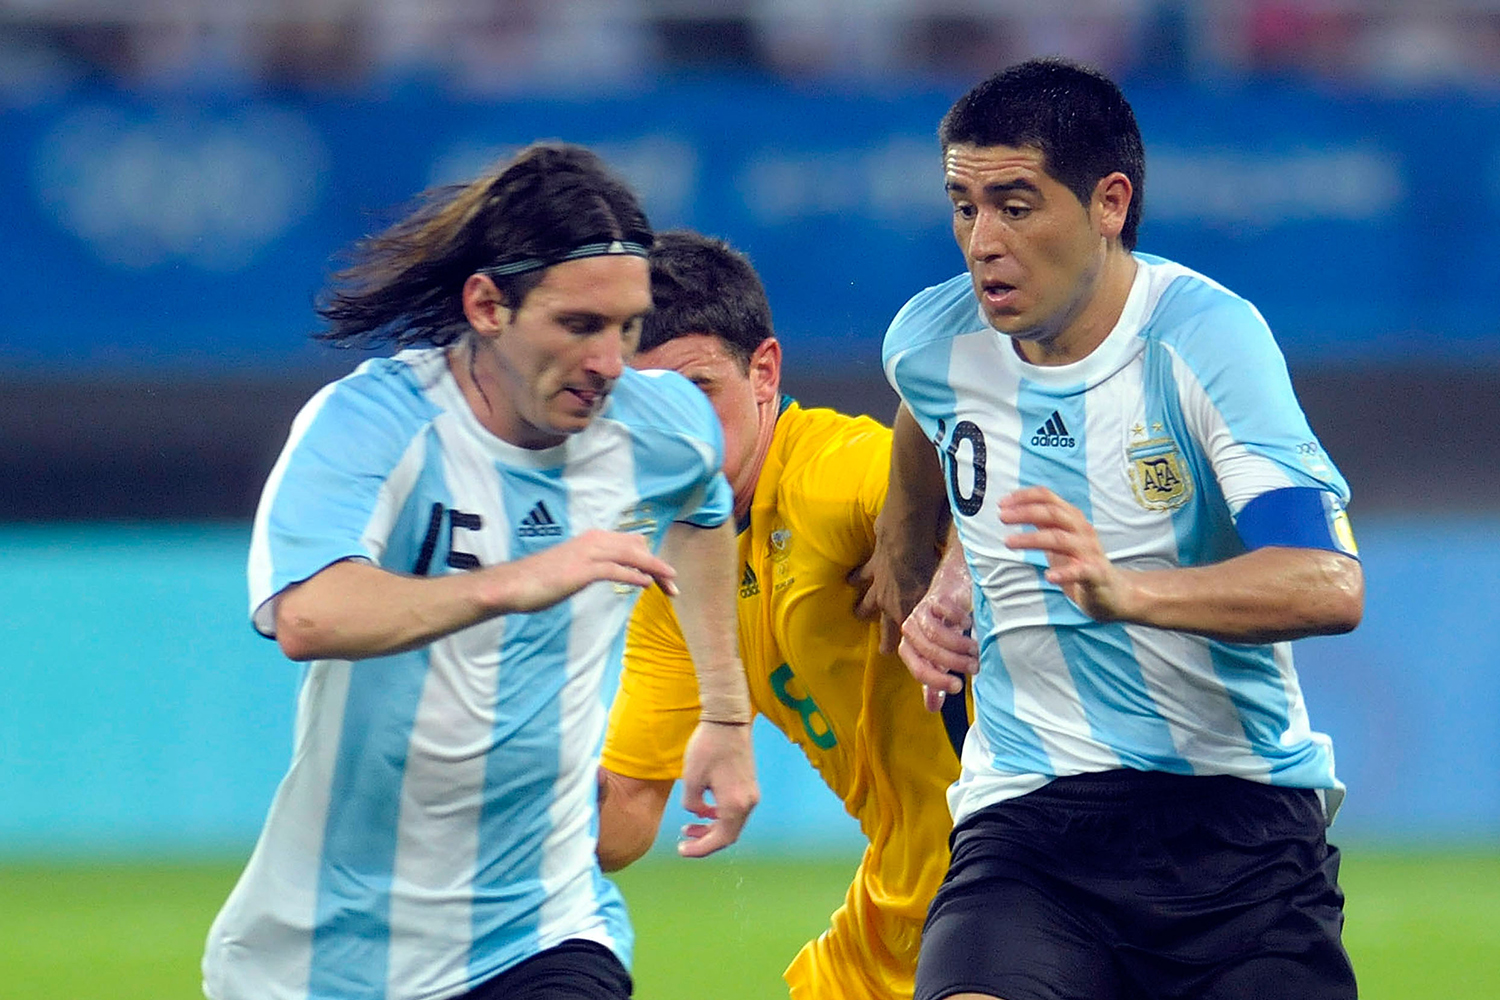 Juan Riquelme e Lionel Messi em ação pela Argentina nos Jogos Olímpicos de Pequim, em 2008 - Alexander Hassenstein/Getty Images